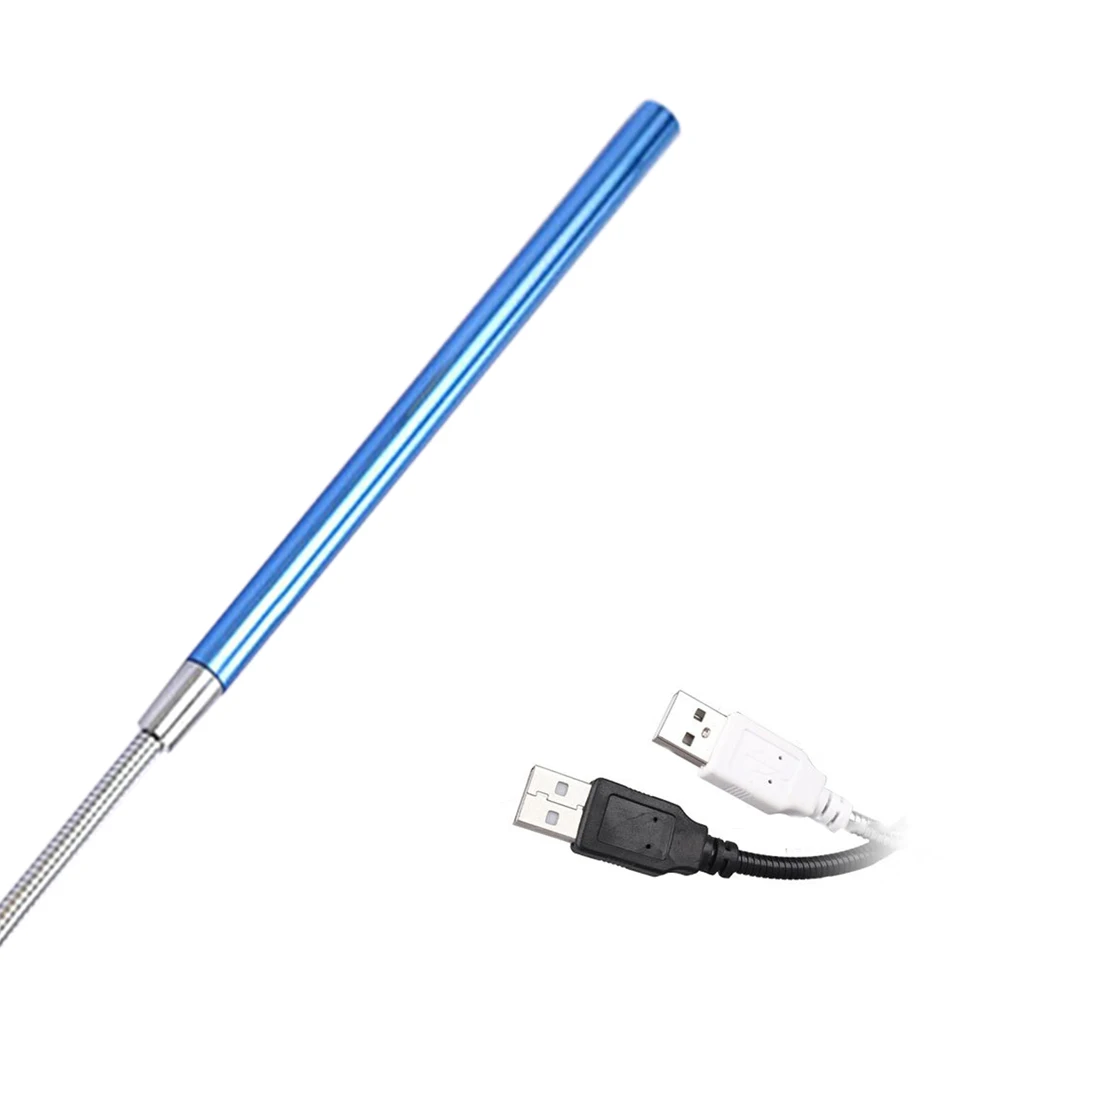 Металлический материал USB светодиодный светильник 10 светодиодный s гибкие лампы для чтения книг для ноутбука ПК компьютер 6 цветов - Испускаемый цвет: Blue